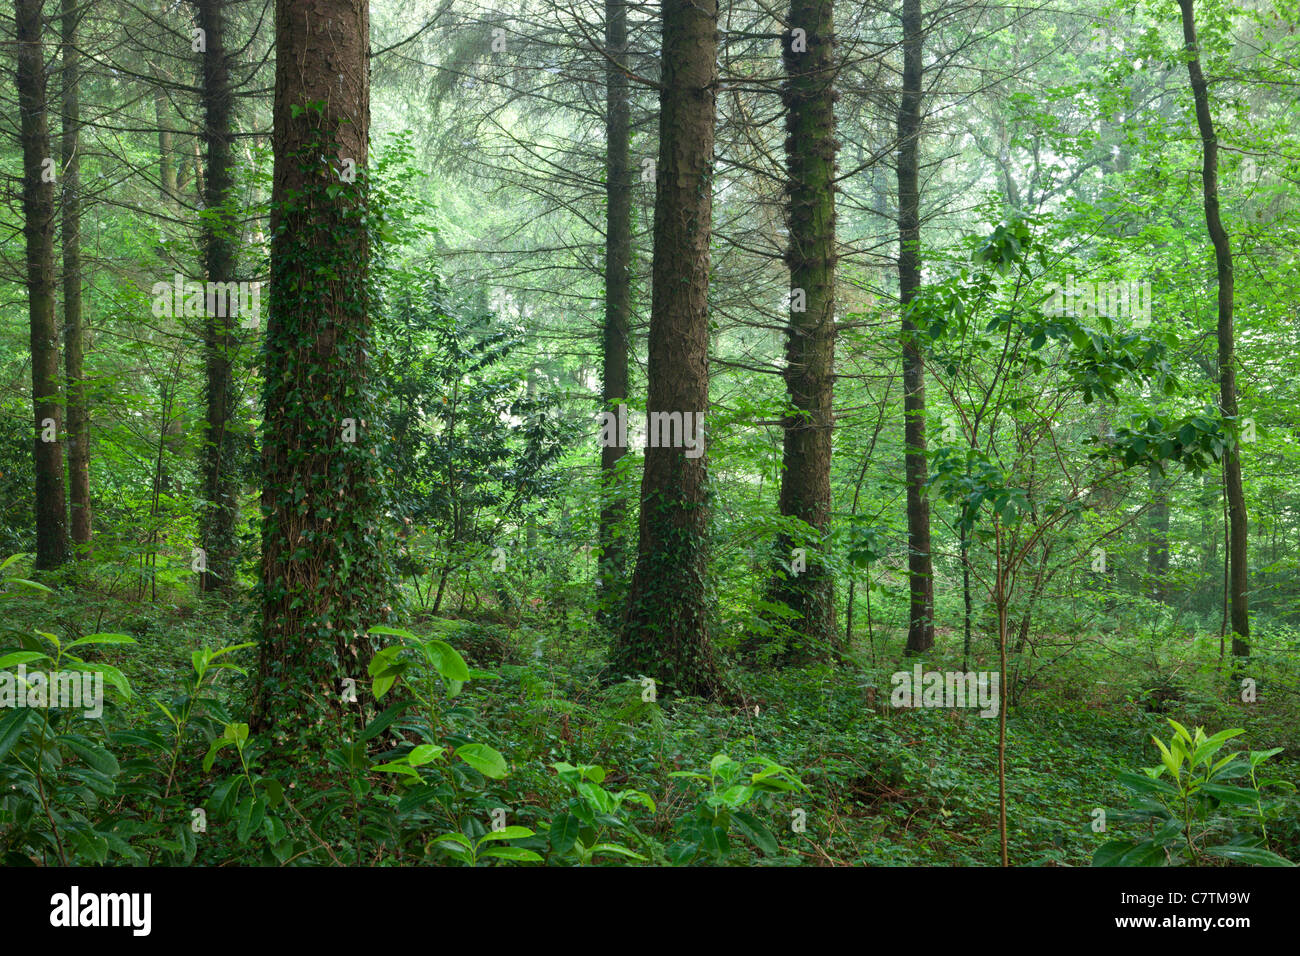 Pine woodland in summer, Morchard Wood, Devon, England. Summer (June) 2011. Stock Photo